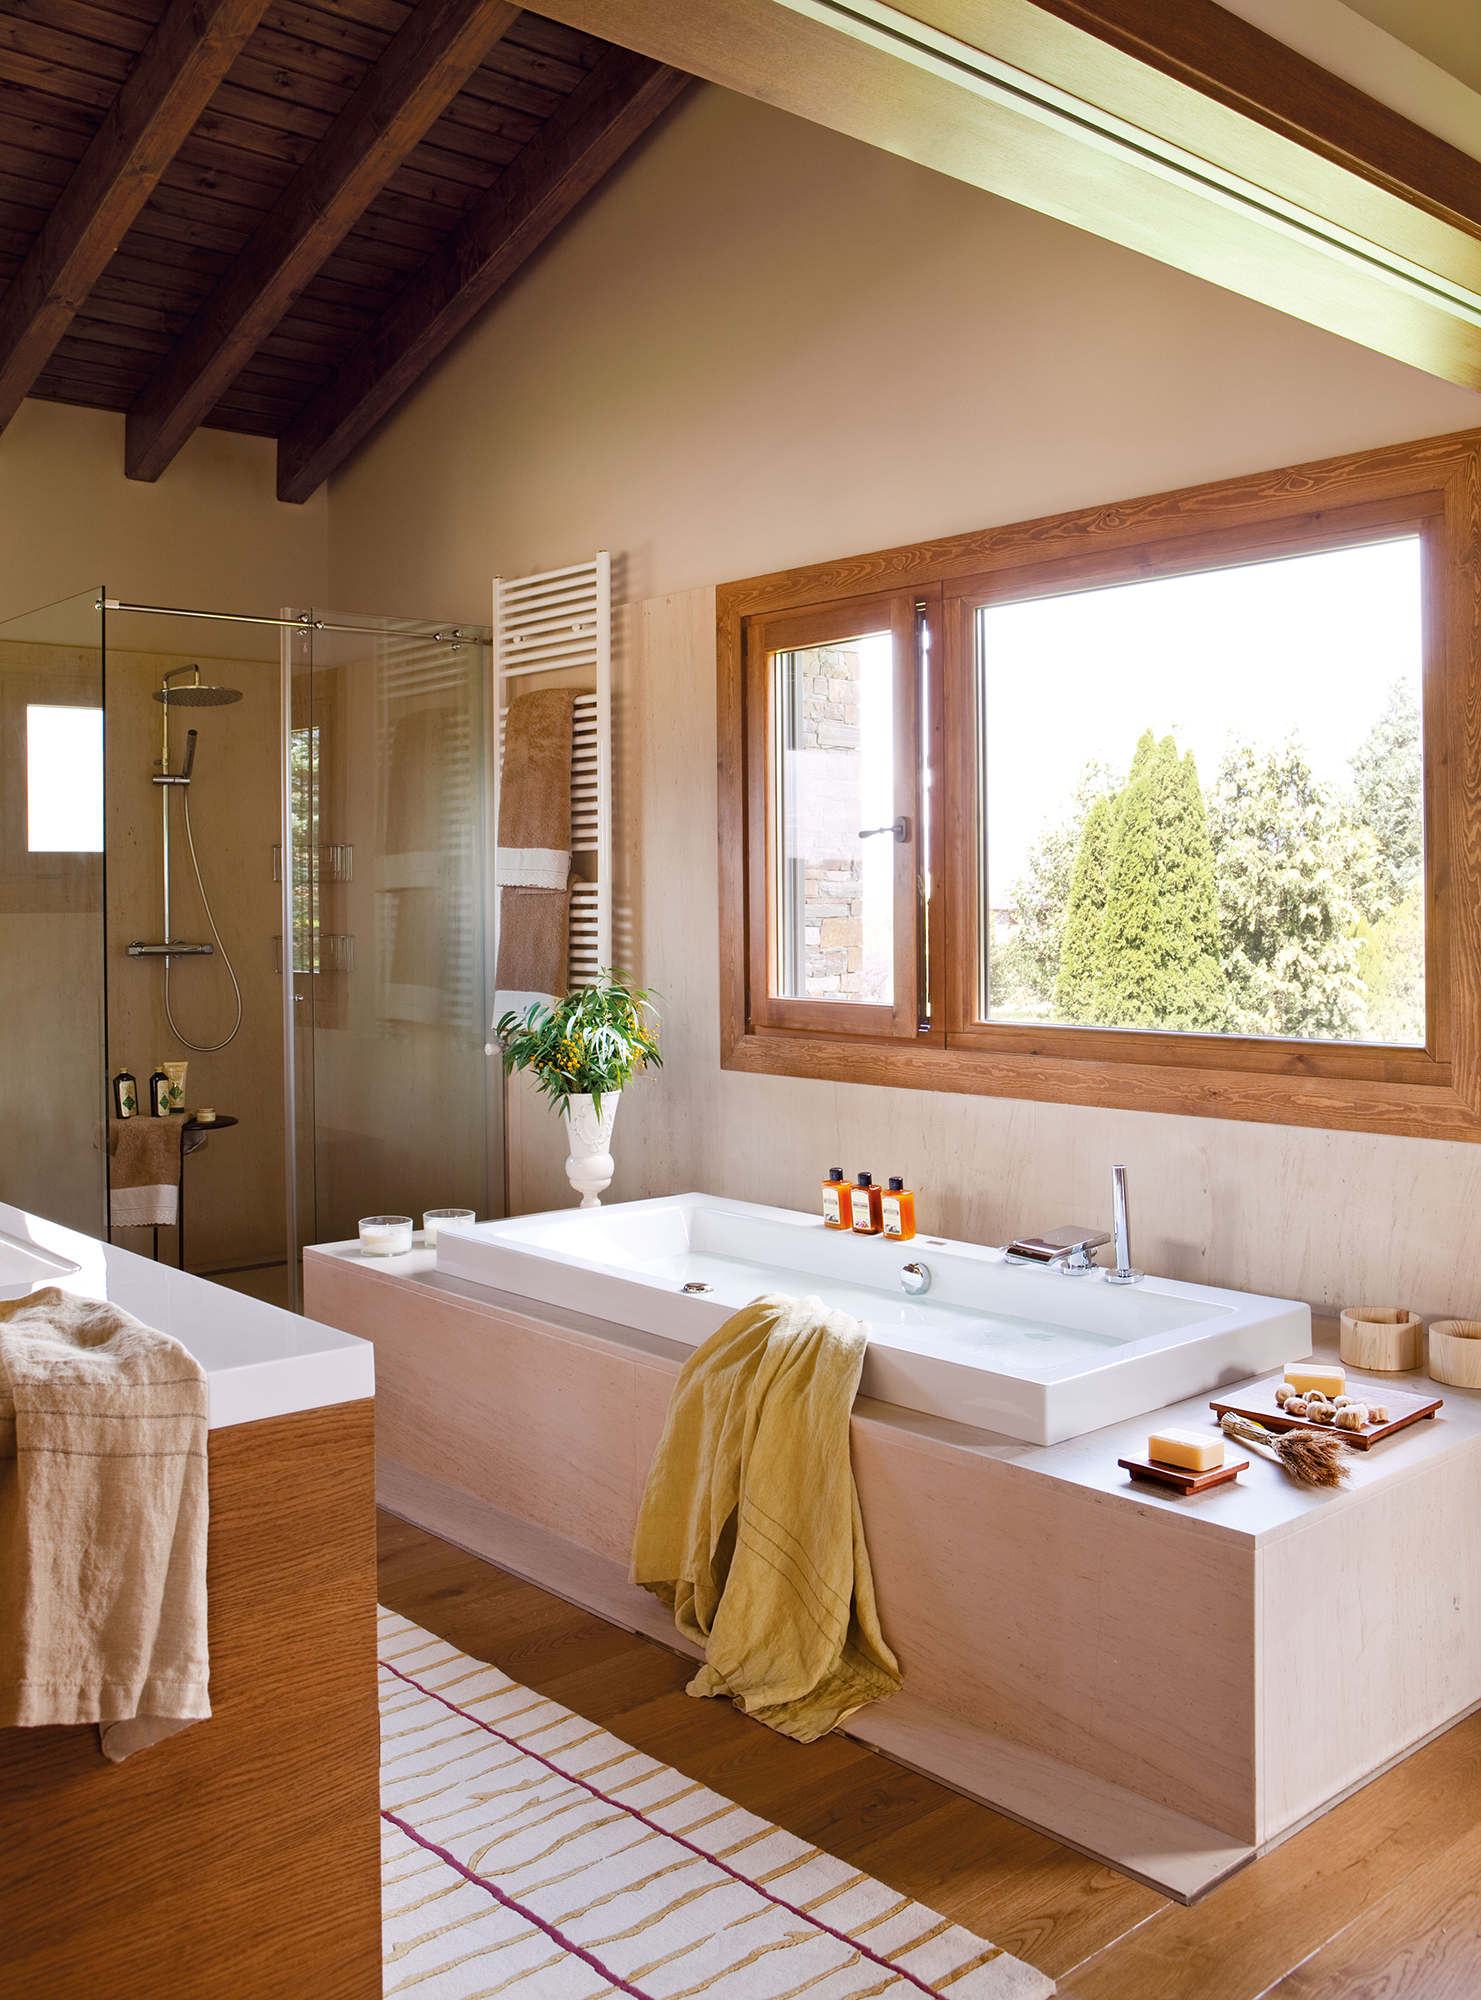 Radiador toallero: calienta tu baño y tus toallas - Guiaarquitectura